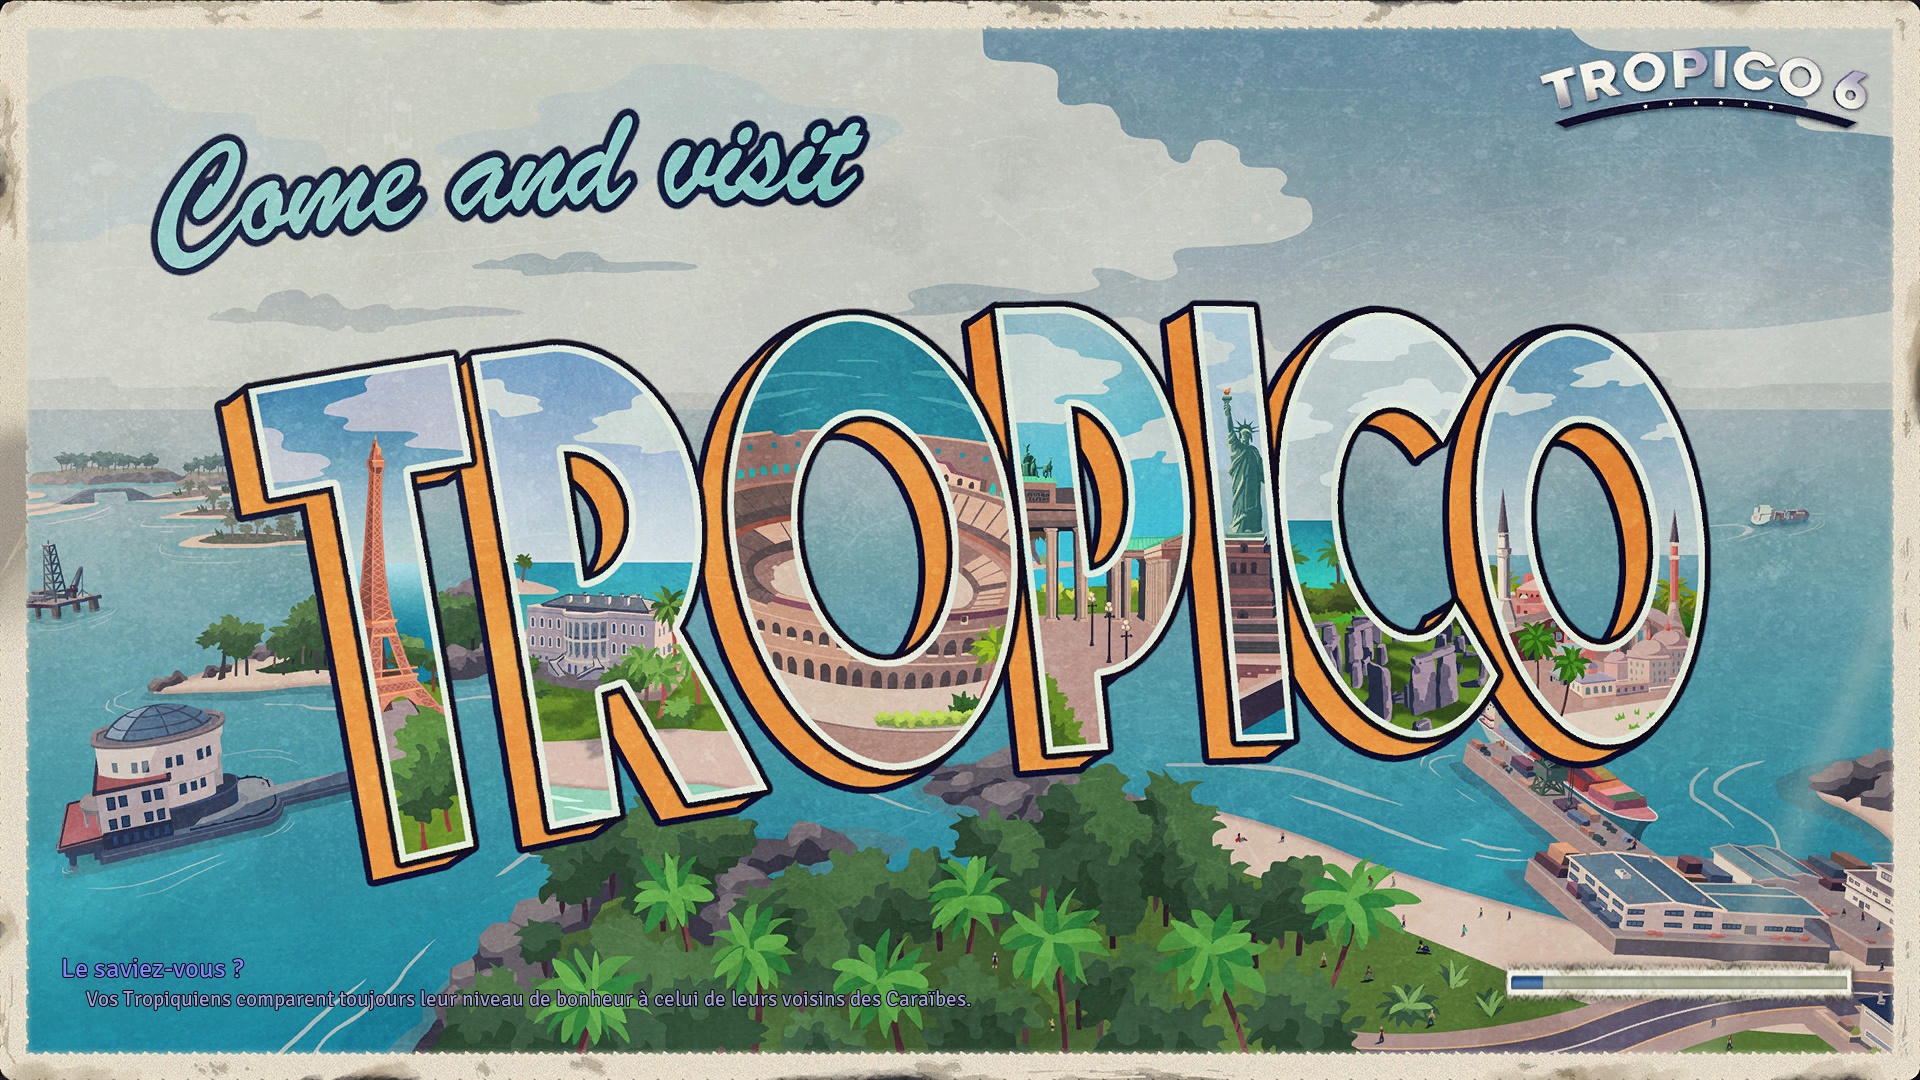 tropico 6 guide